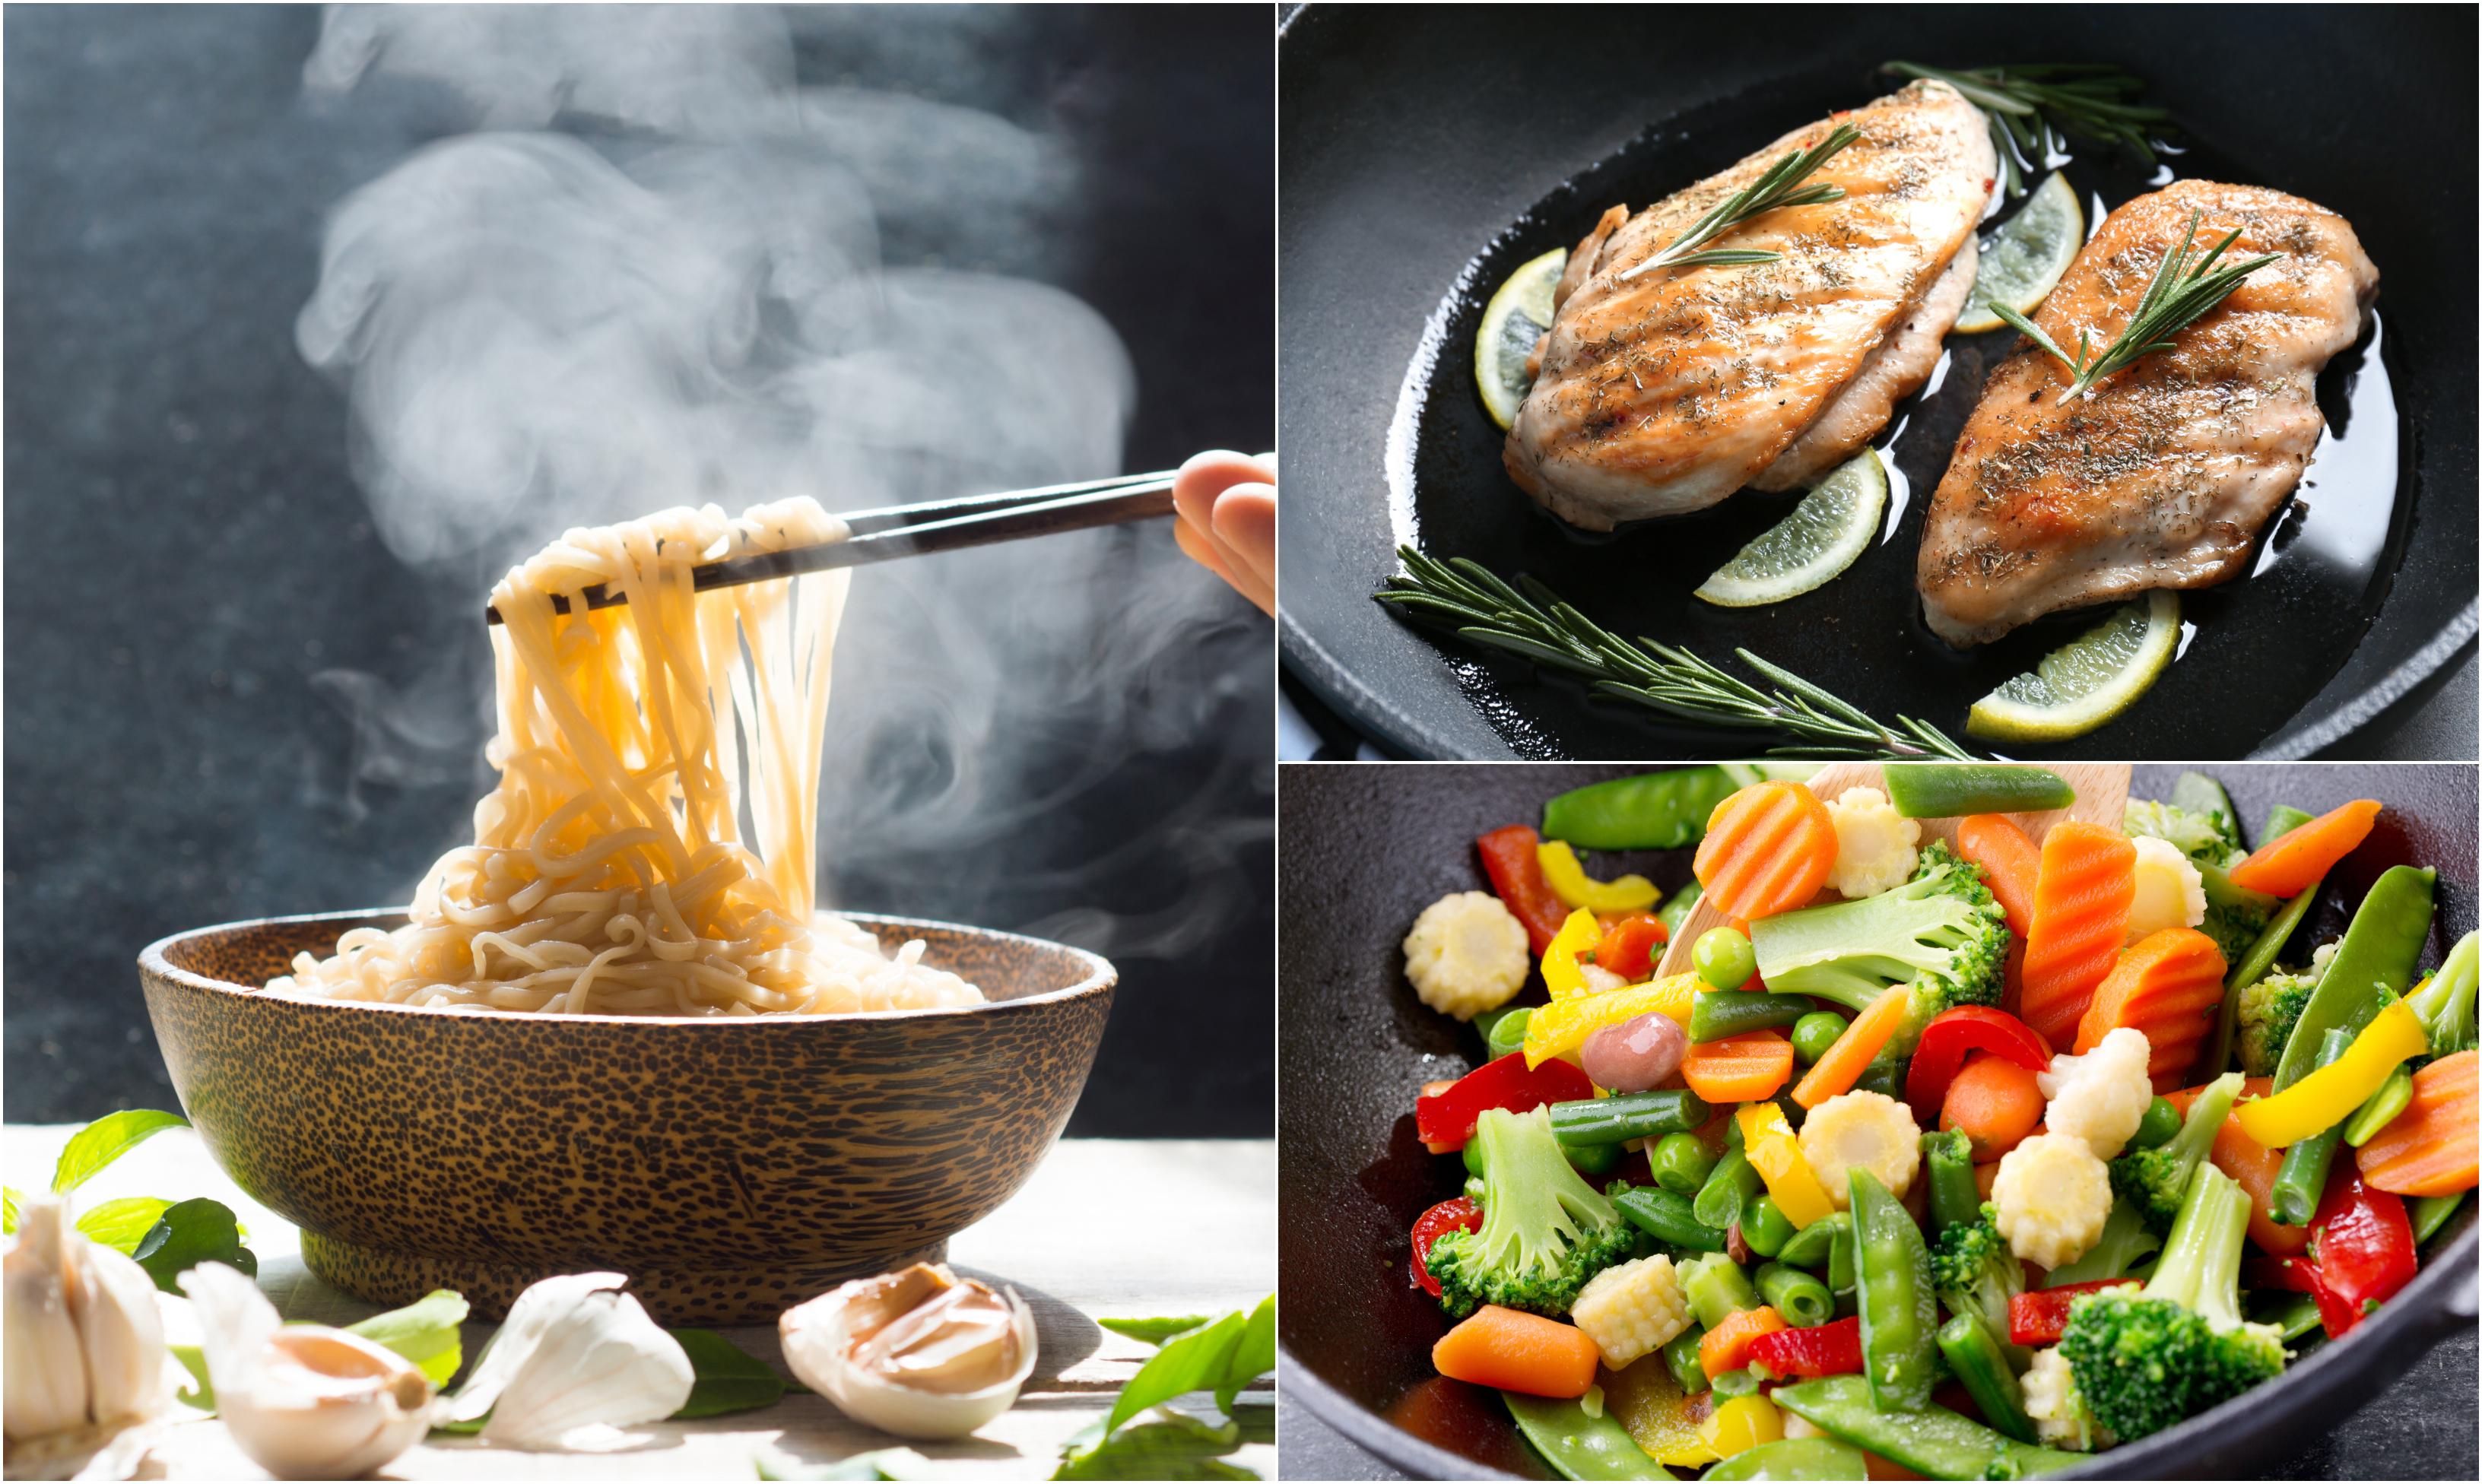 Top 3 idei culinare rapide. Rețete delicioase pentru care nu trebuie să stai prea mult în bucătărie